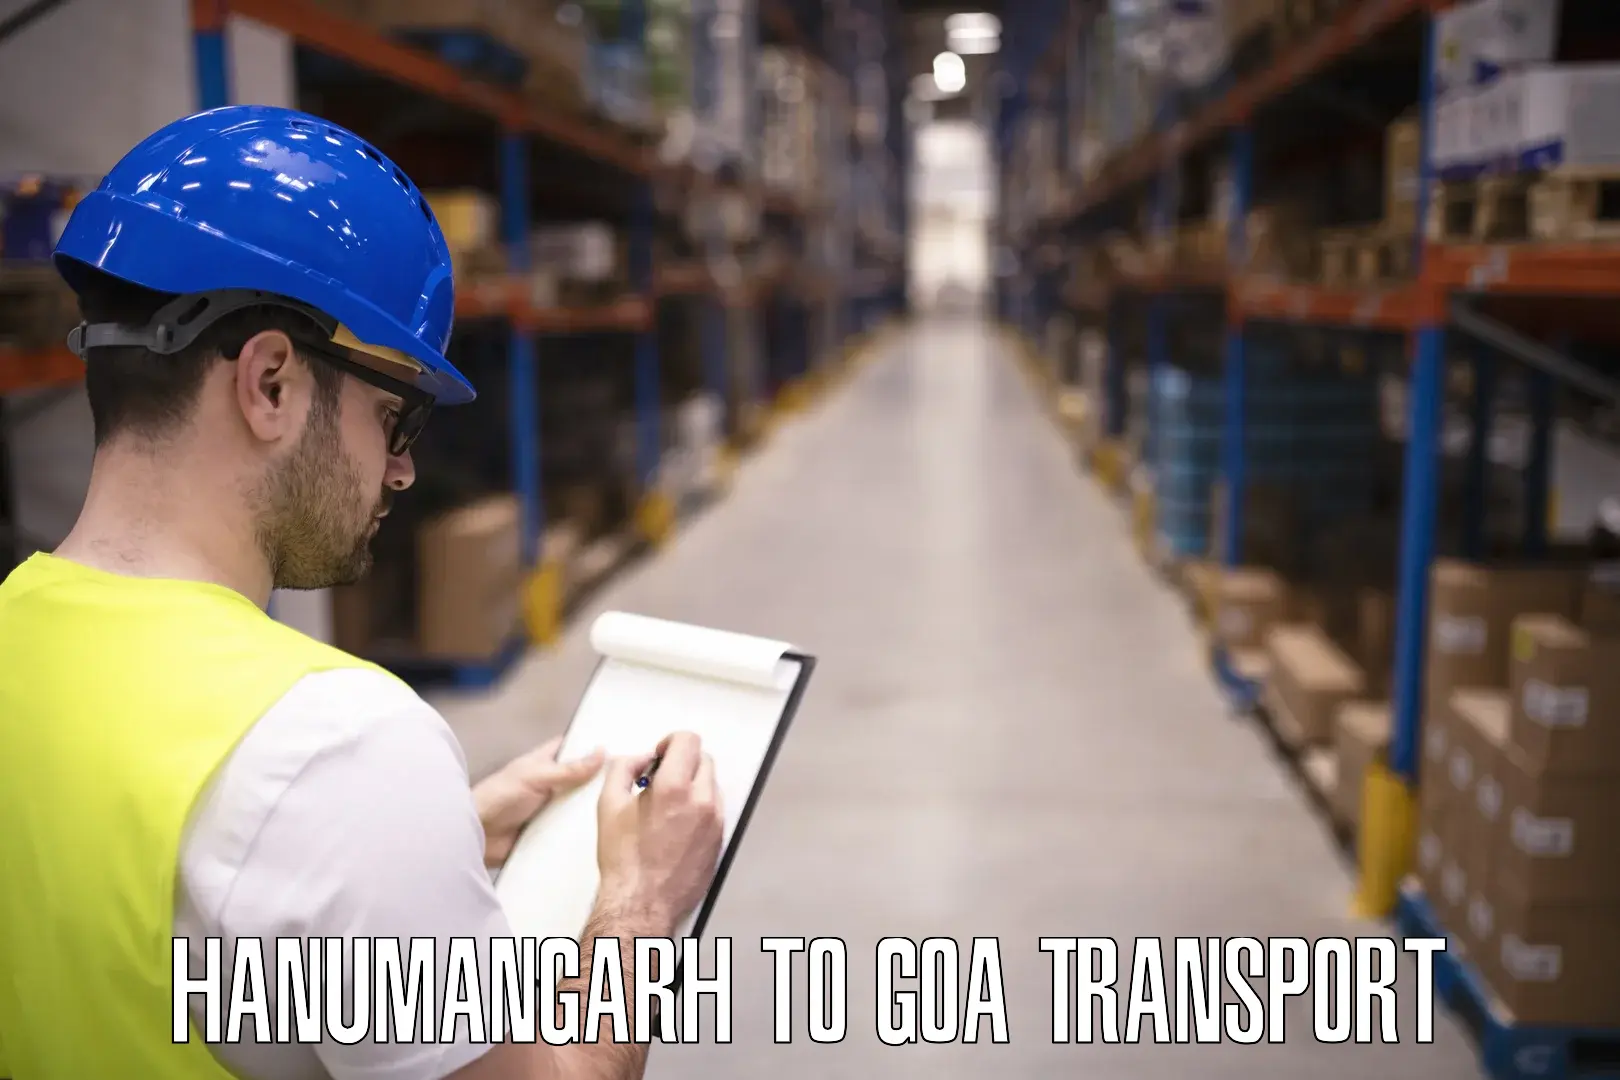 Online transport service Hanumangarh to Sanvordem